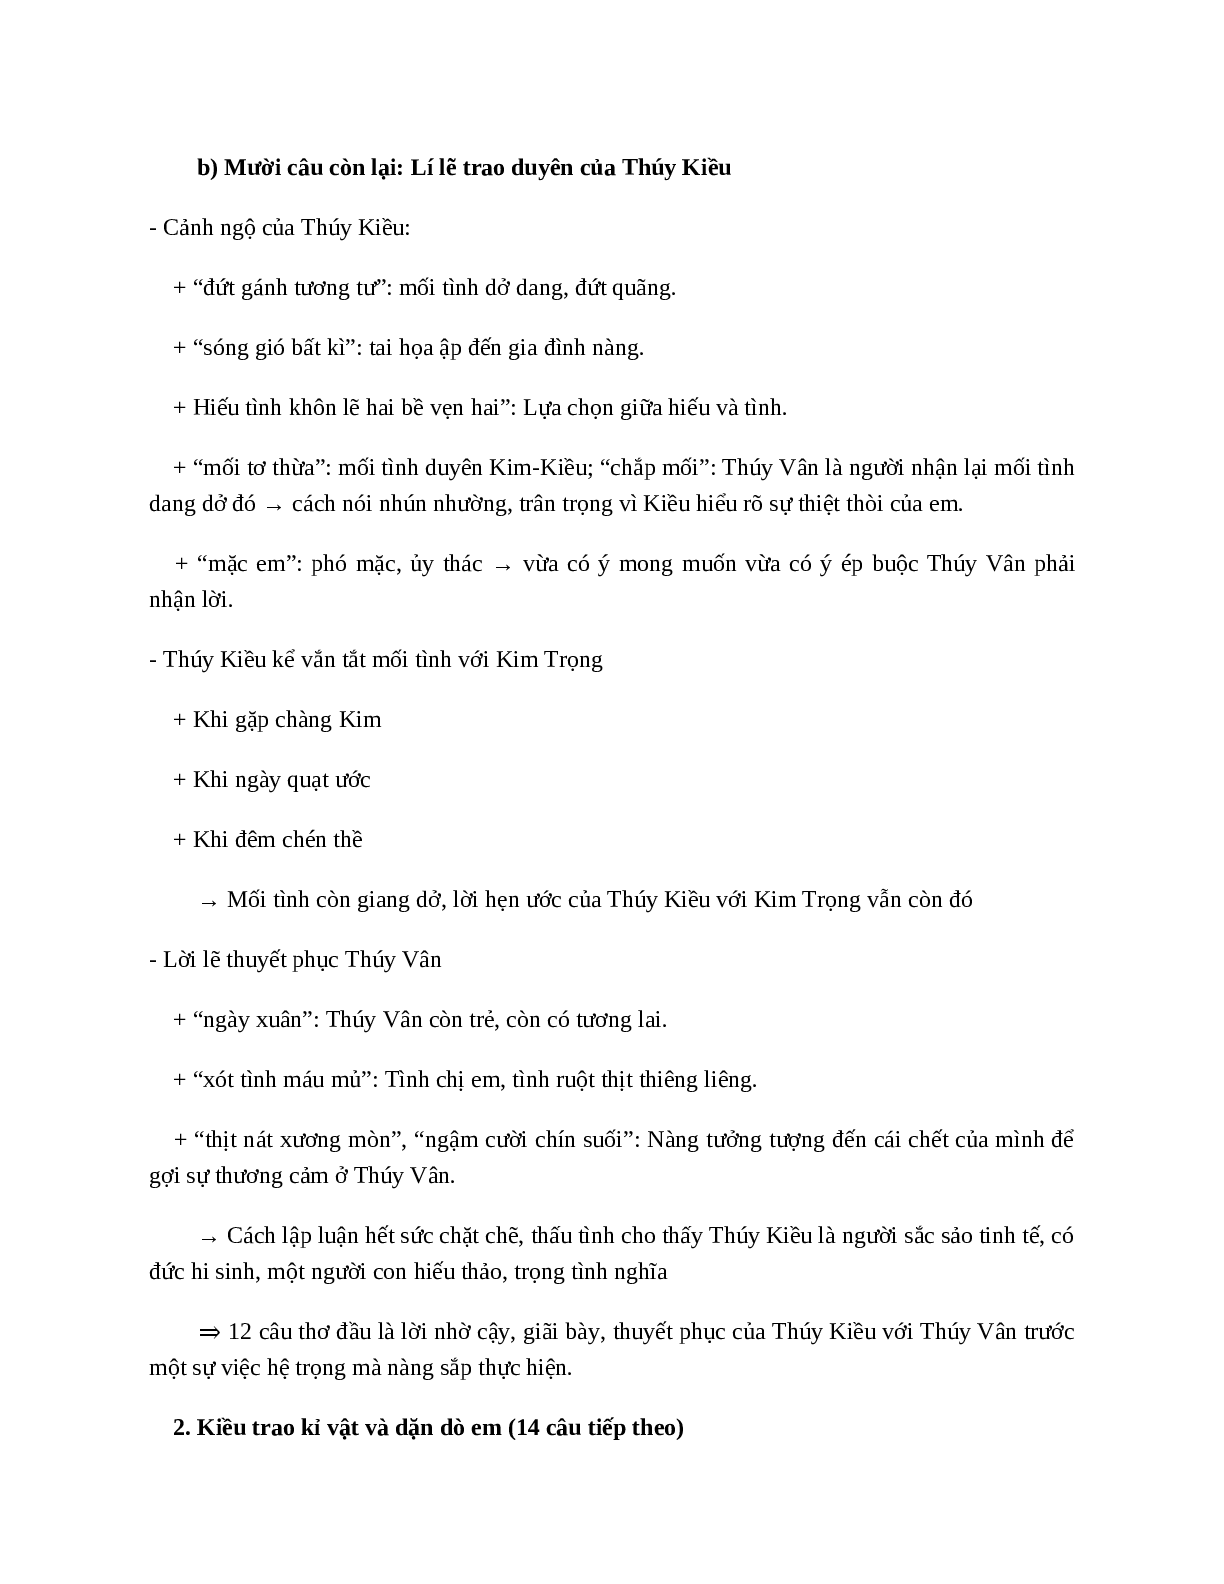 Trao duyên (Trích Truyện Kiều - Nguyễn Du) - nội dung, dàn ý phân tích, bố cục, tóm tắt (trang 5)